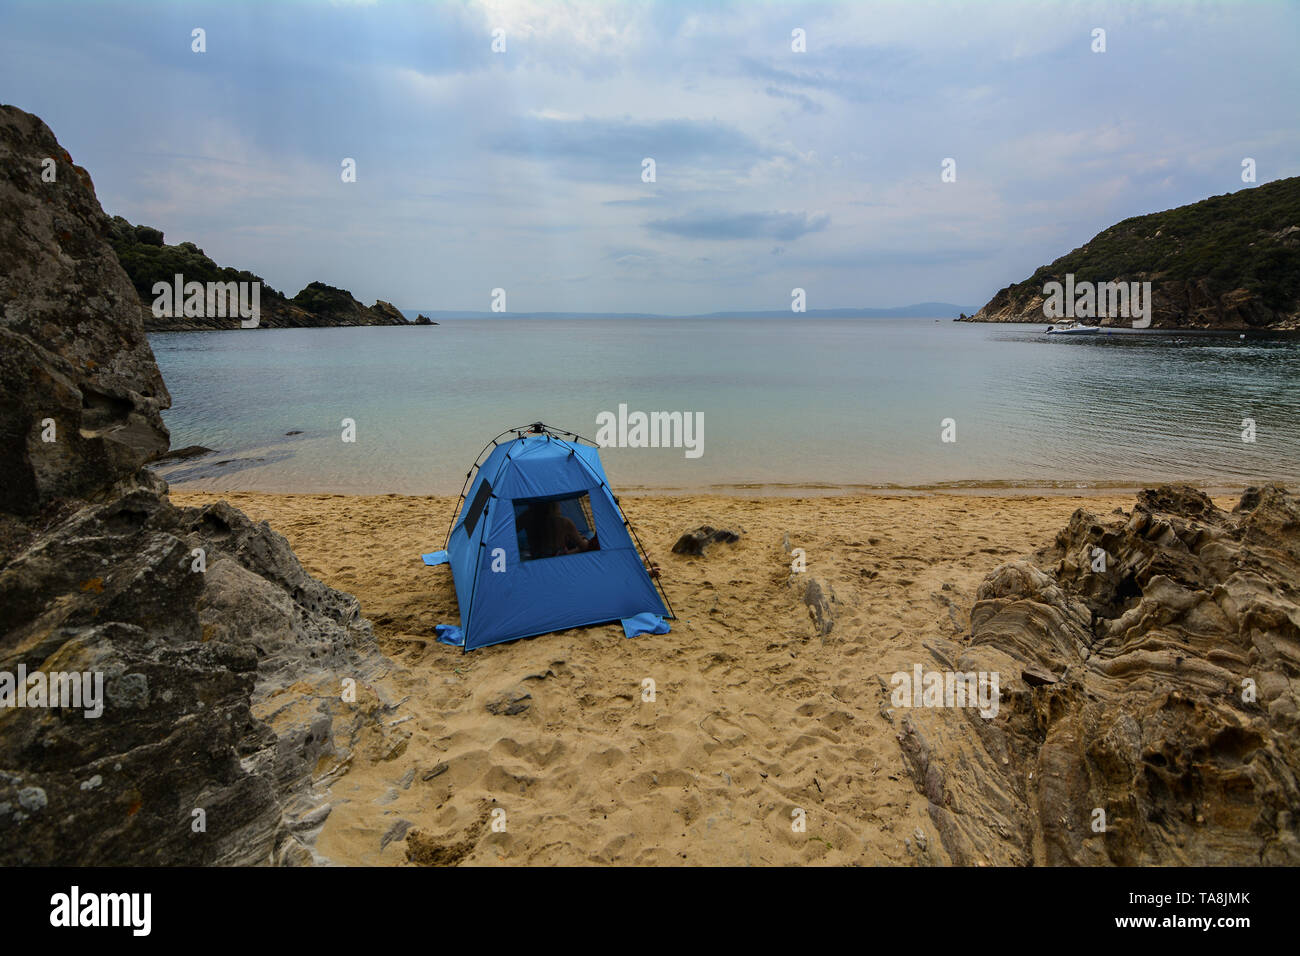 Camping am Meer der Insel Amouliani. Nordgriechenland. Der Sommer in griechenland aus einer neuen Perspektive. Stockfoto